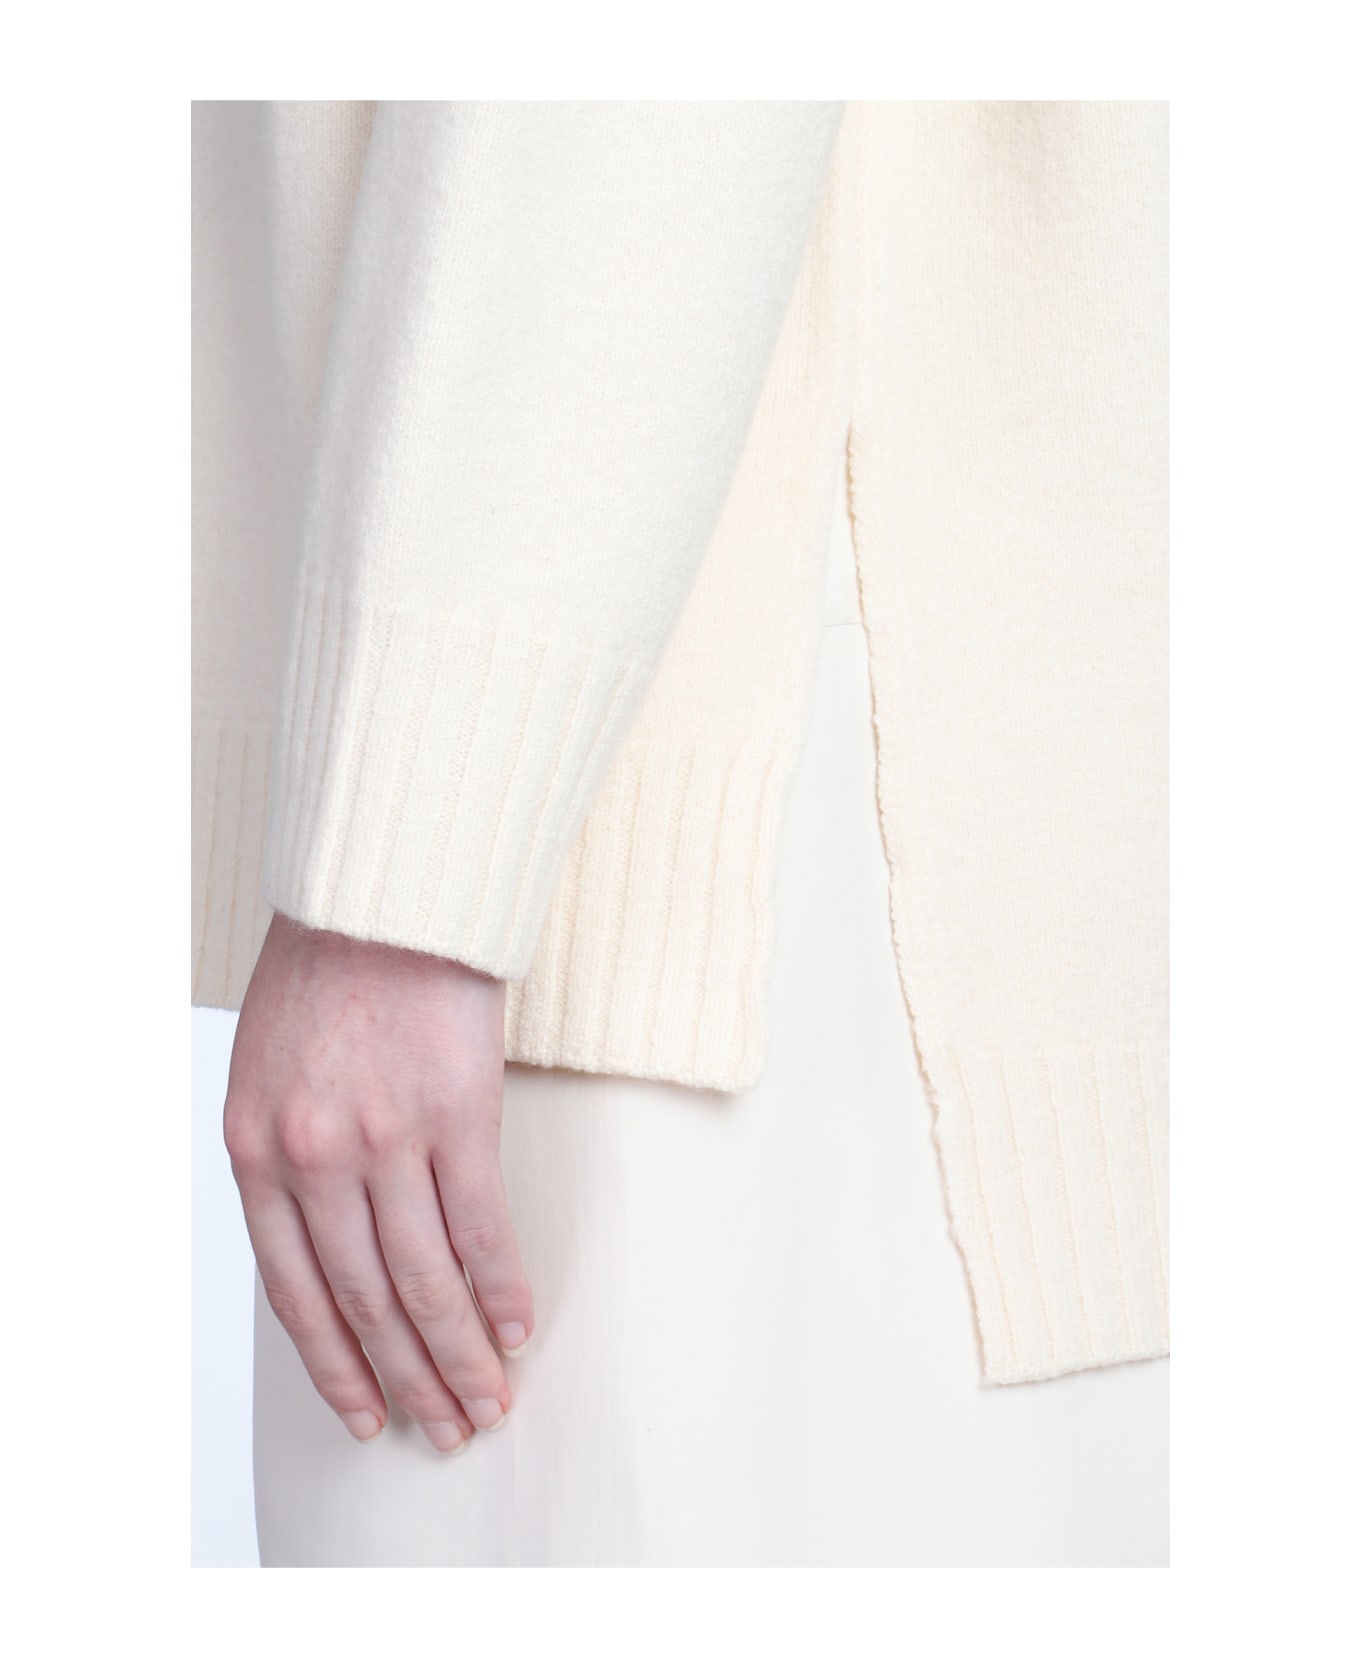 Jil Sander Beige Wool Sweater - Ivory